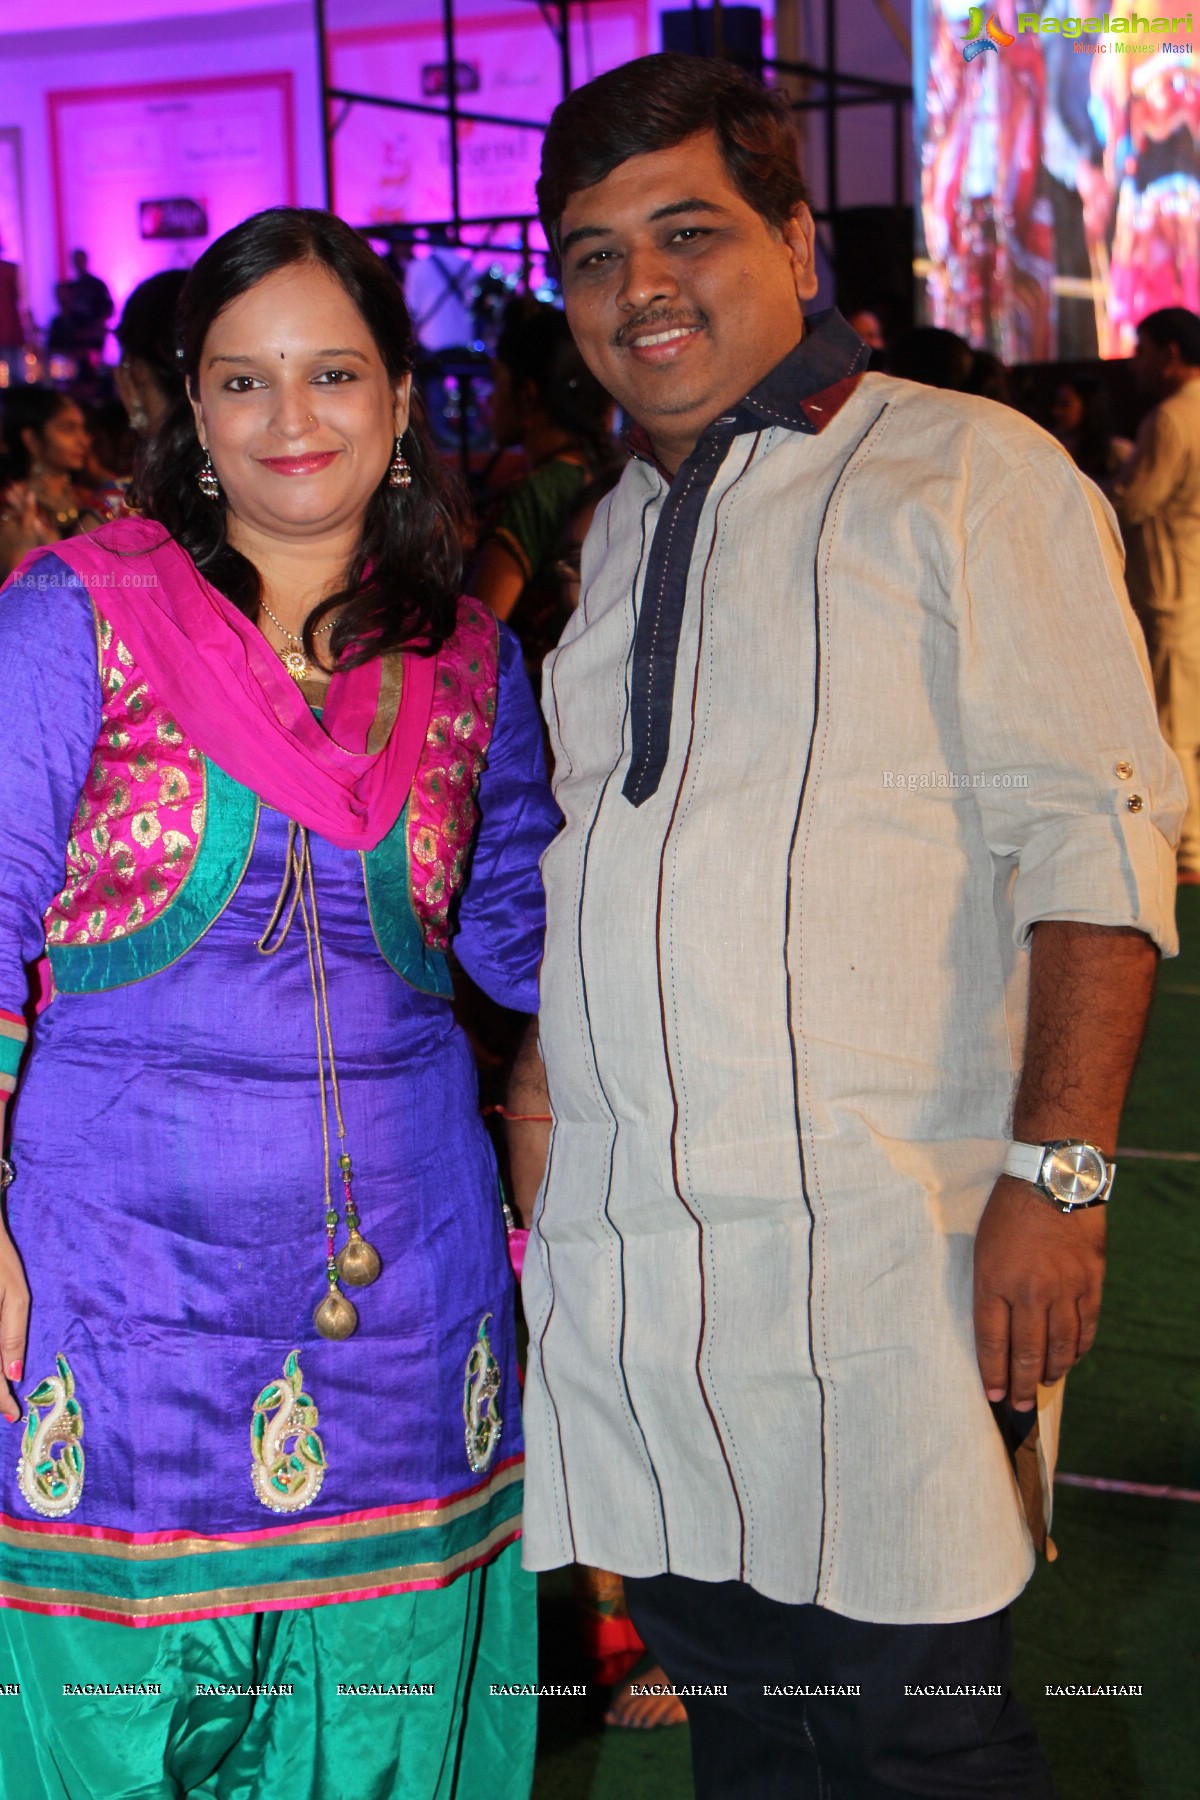 Legend Navratri Utsav 2014 at Imperial Gardens, Hyderabad